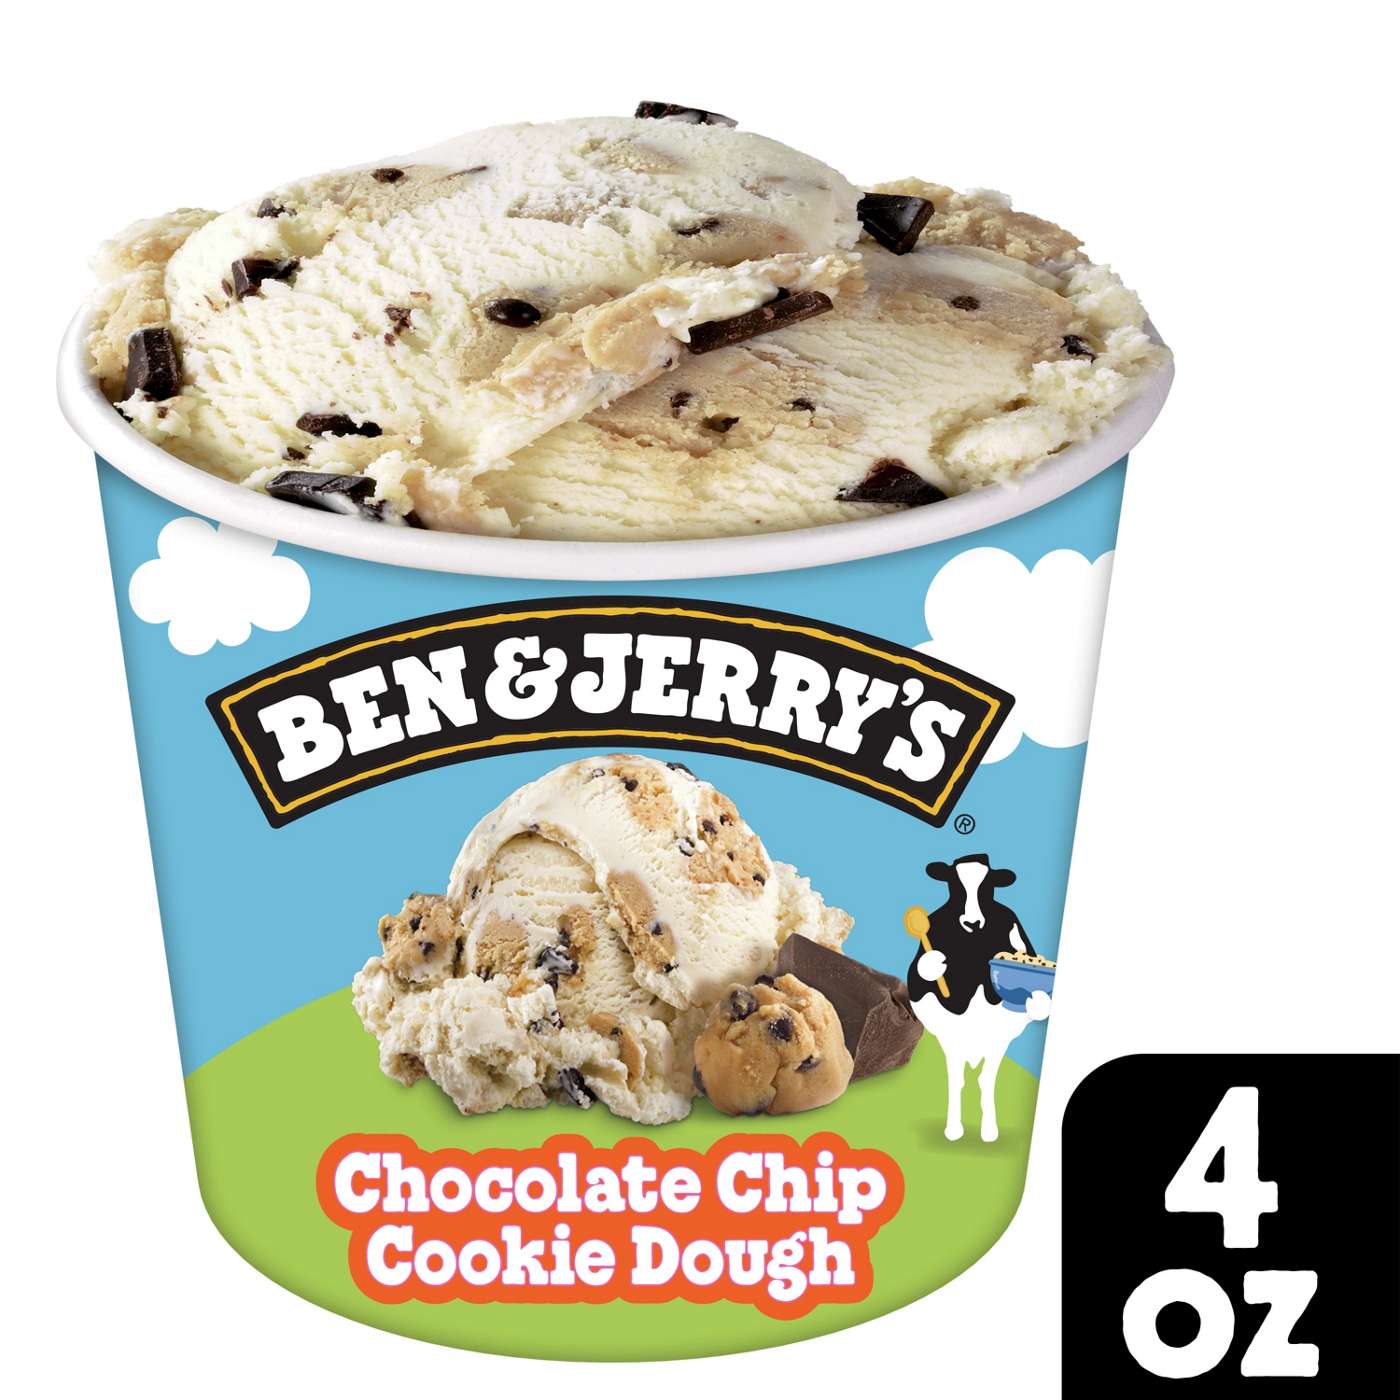 Ben & Jerry's Cookie Dough Ice Cream; image 7 of 7